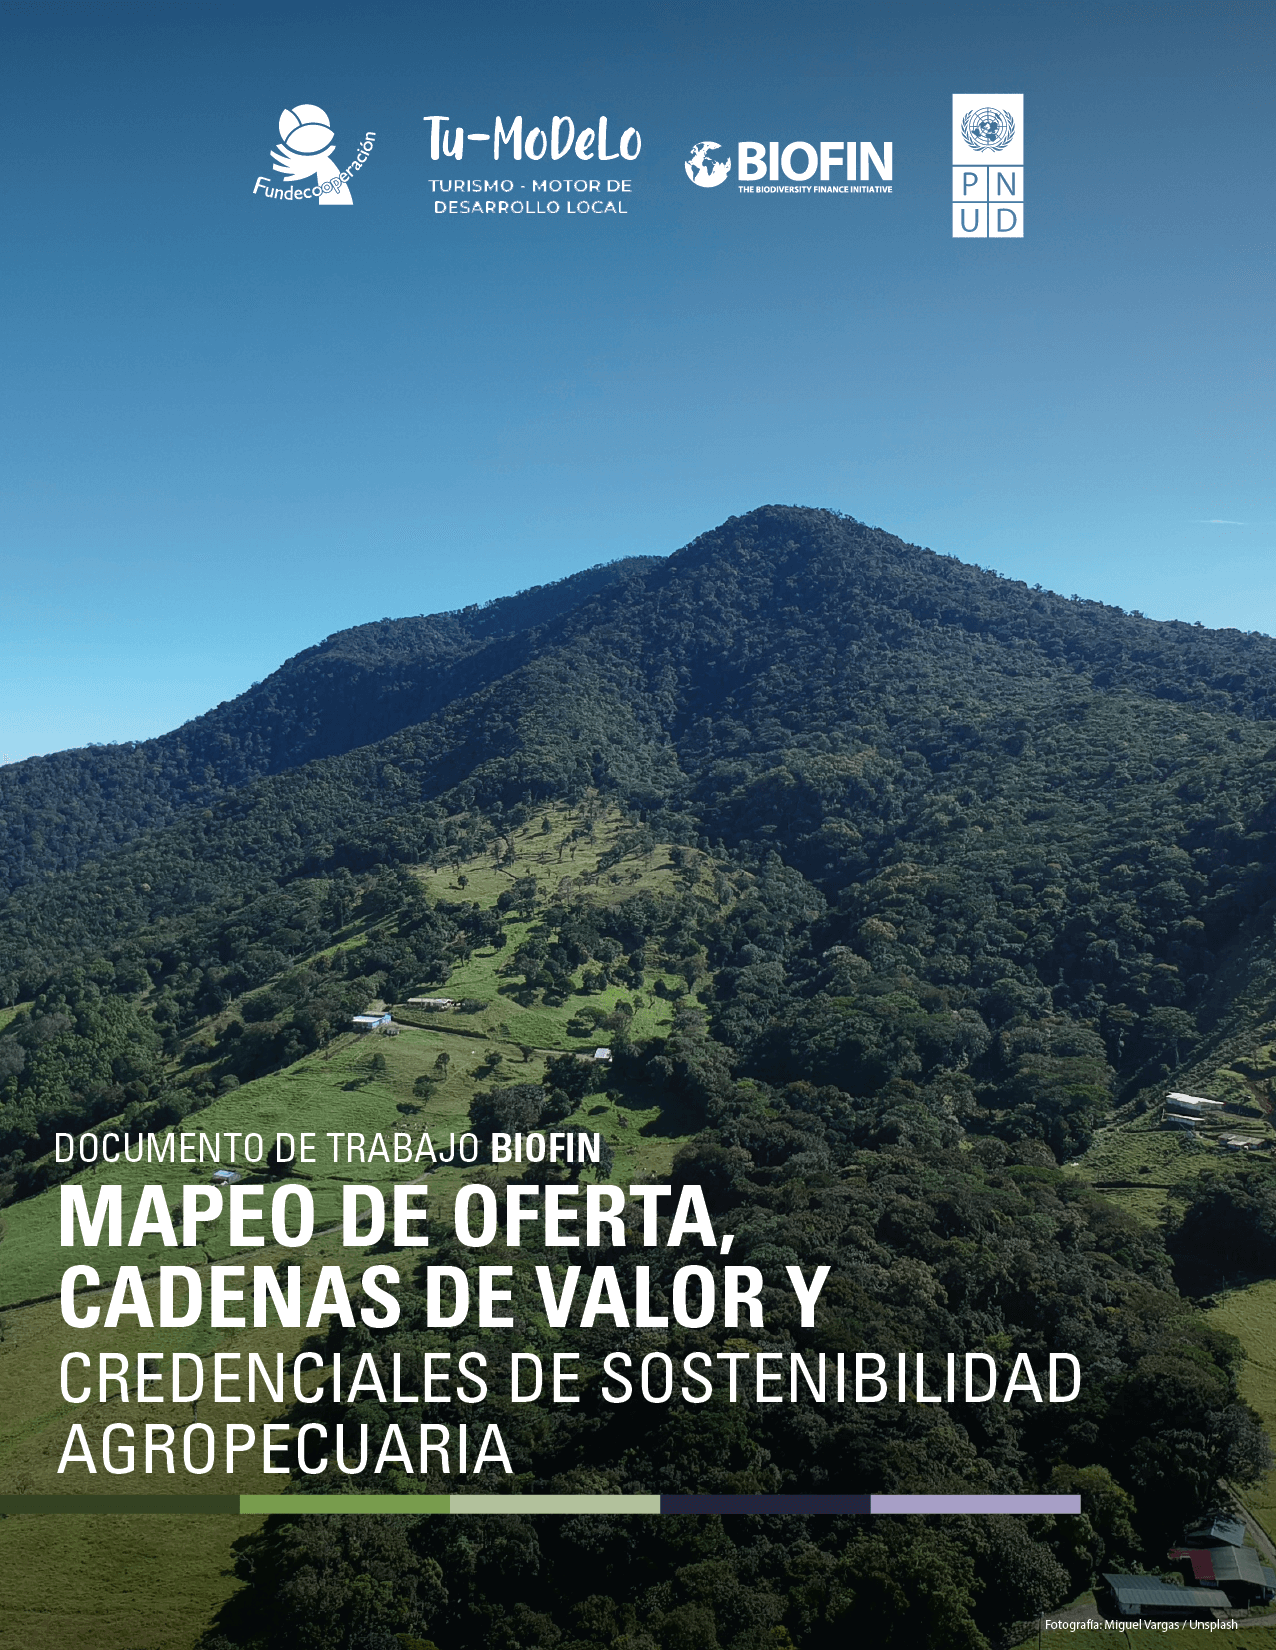 MAPEO DE OFERTA Y CADENAS DE VALOR Y CREDENCIALES DE SOSTENIBILIDAD AGROPECUARIA